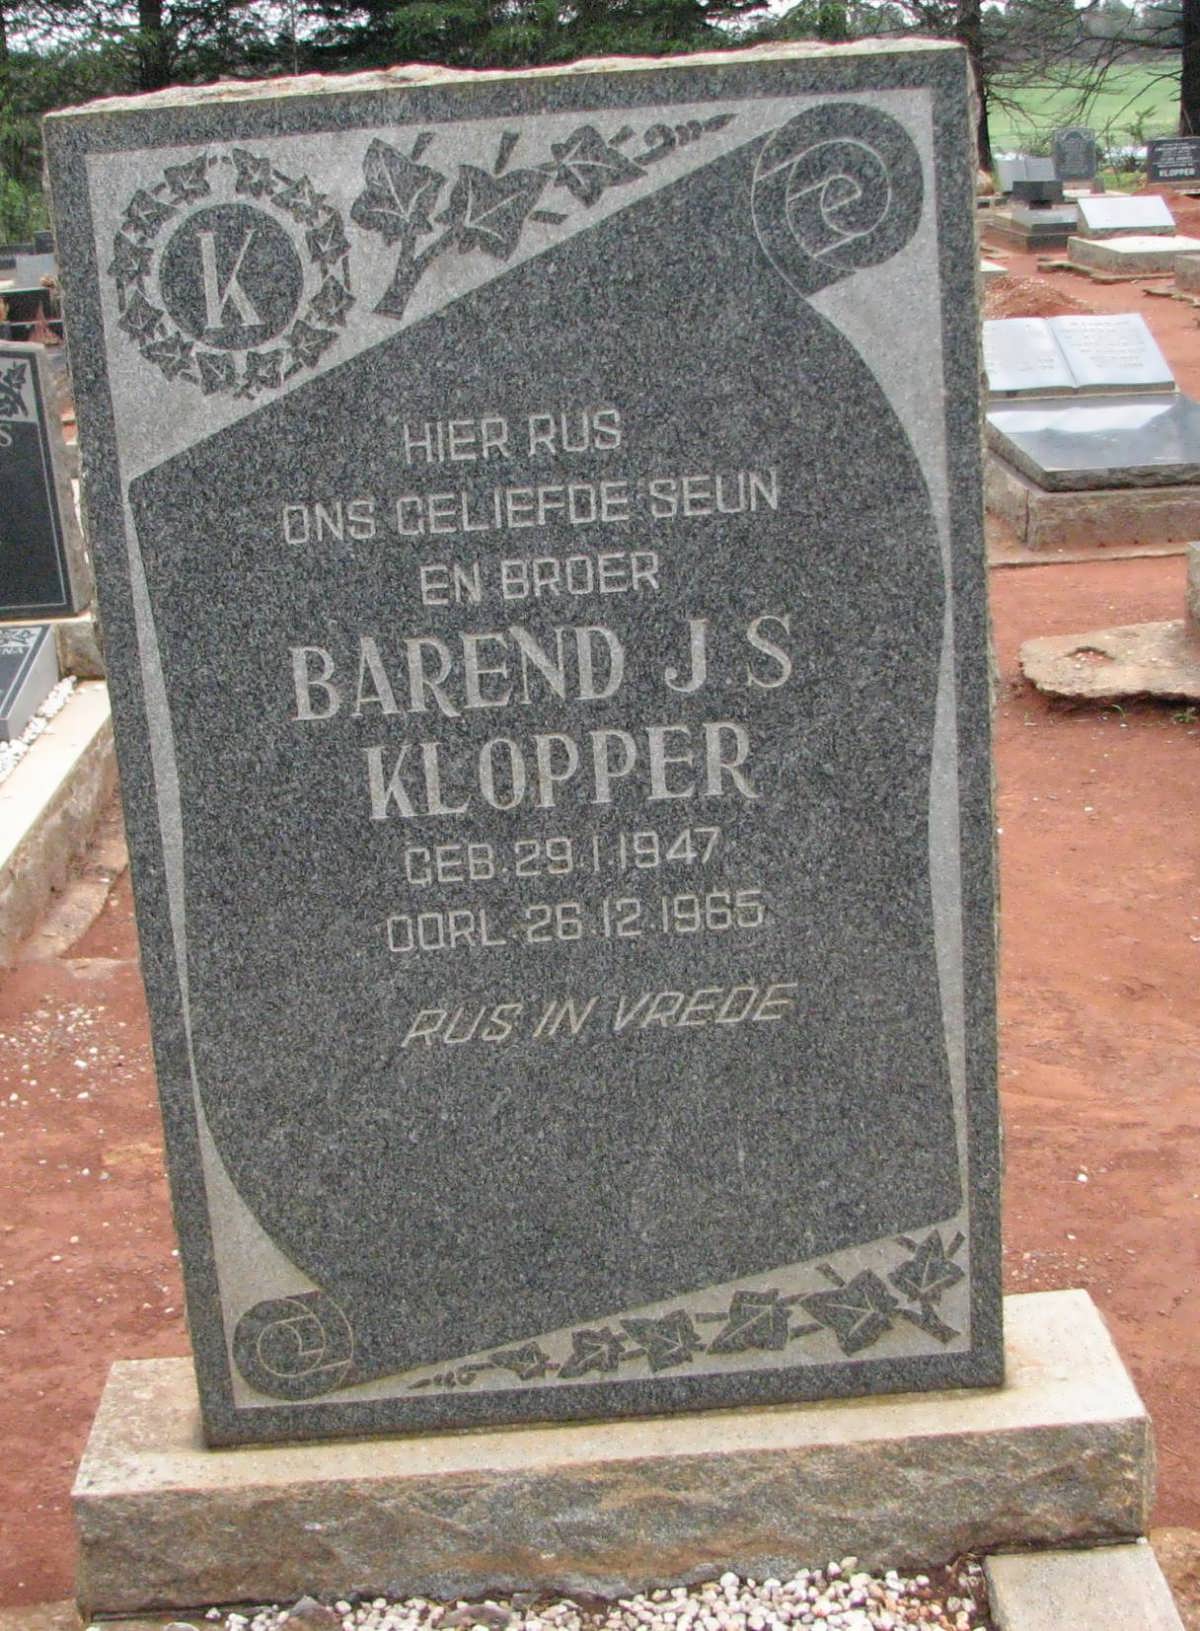 KLOPPER Barend J.S. 1947-1965